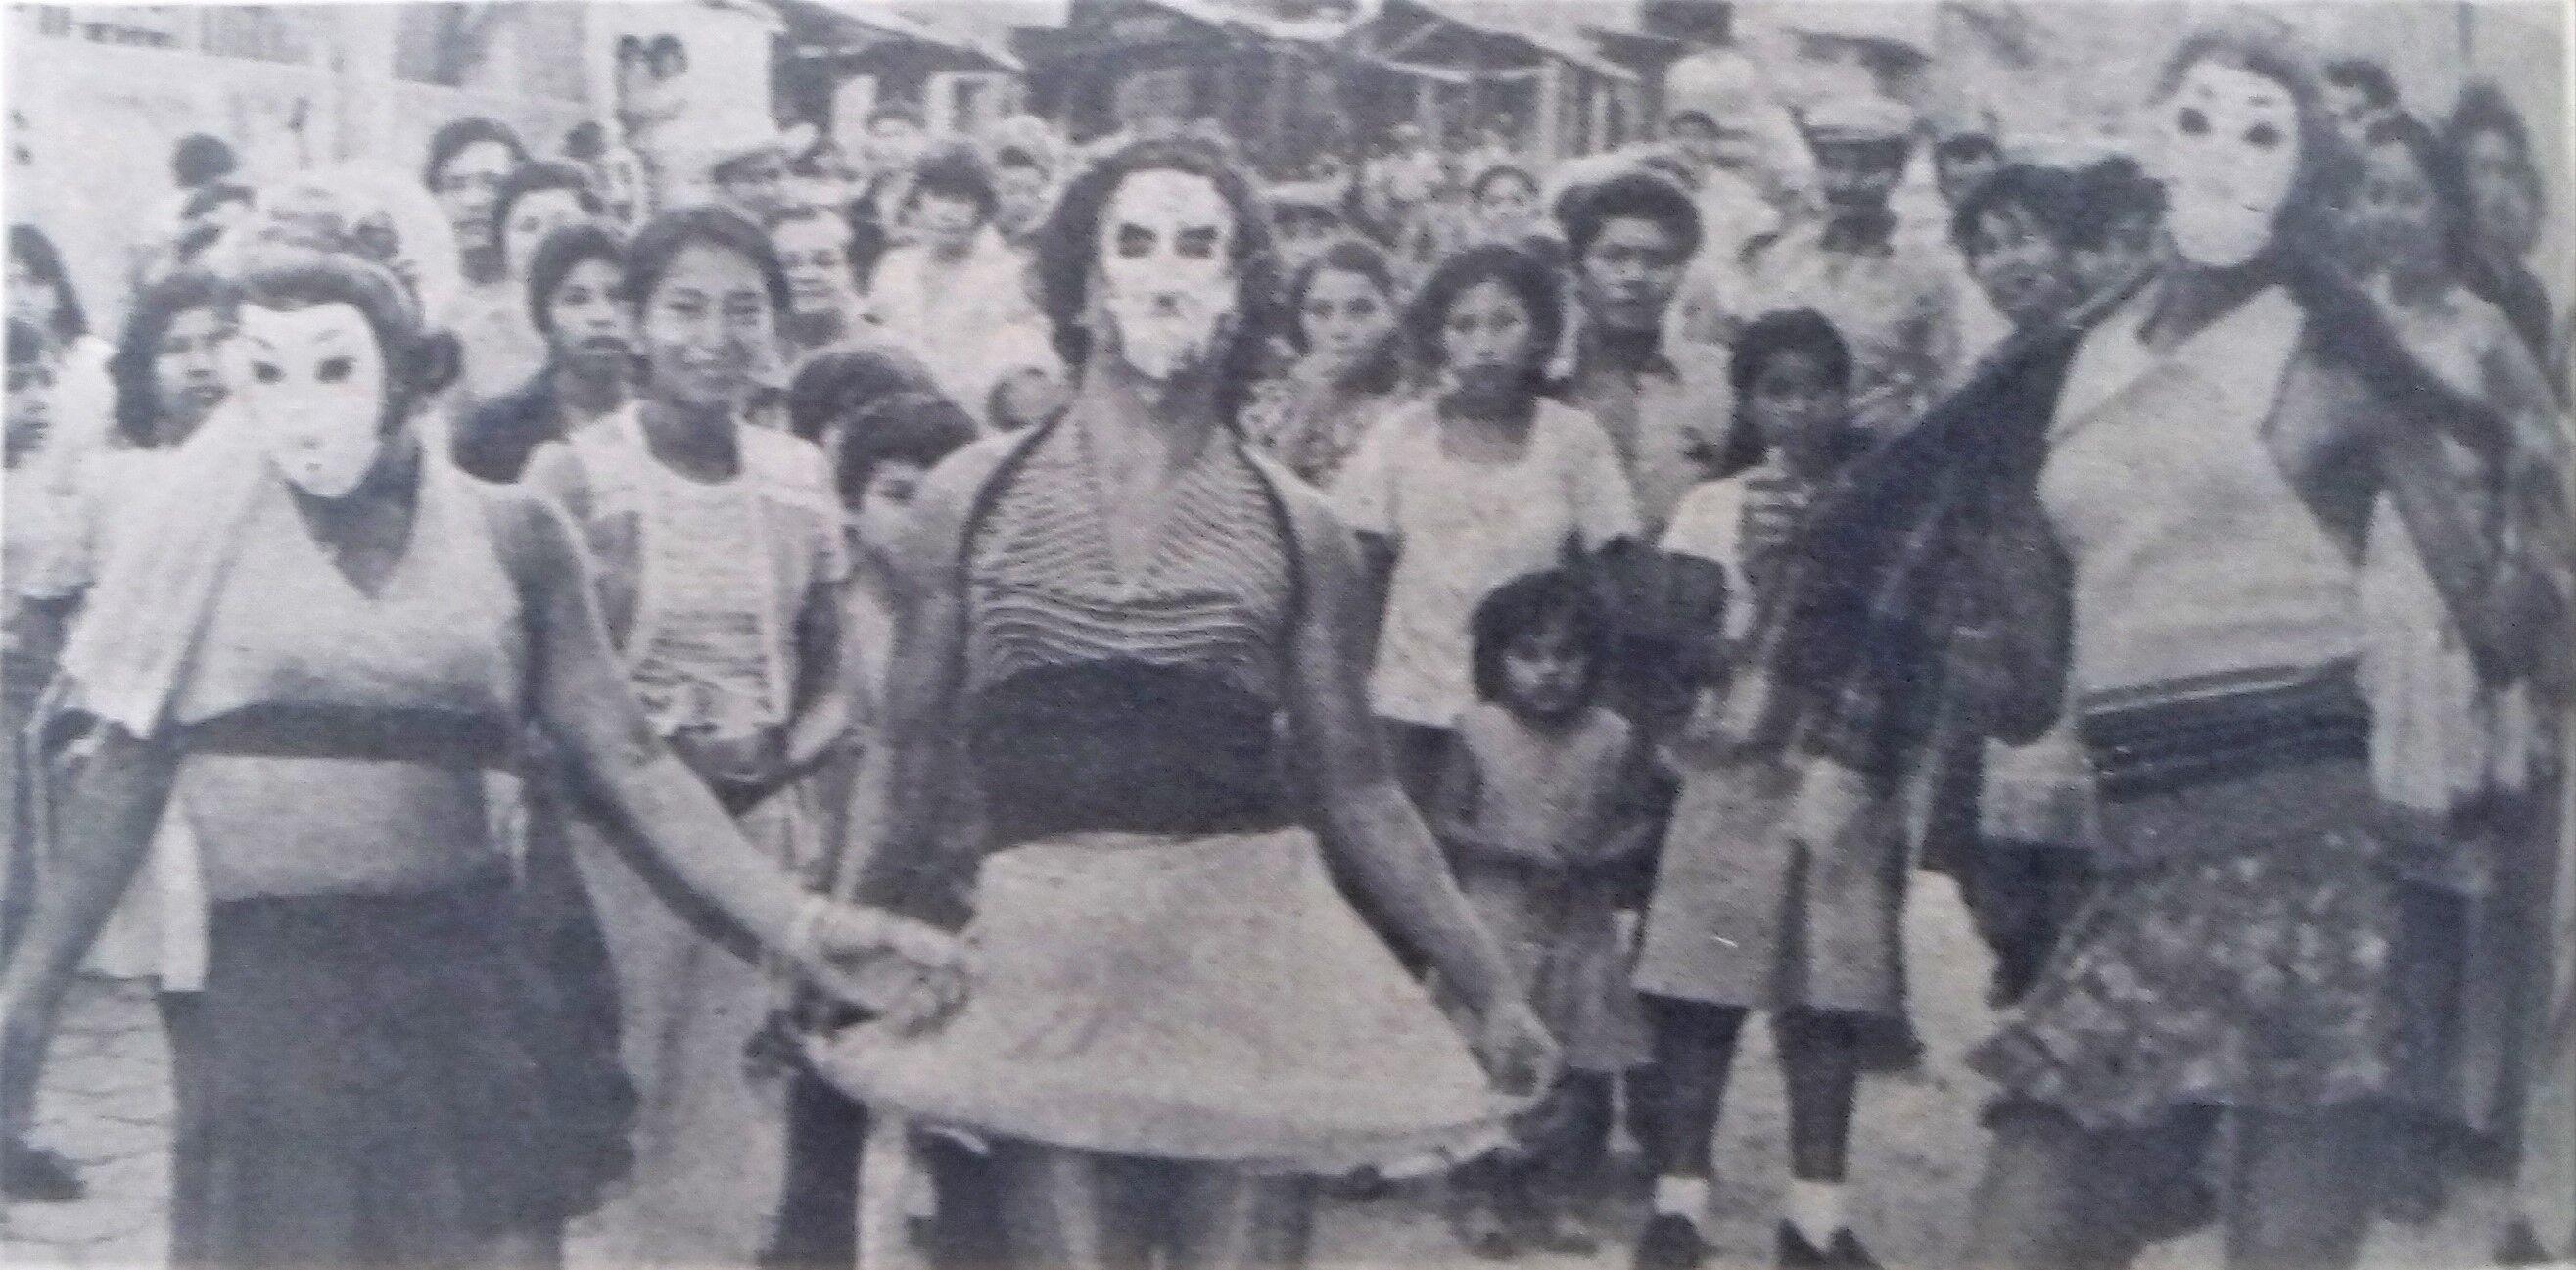 Travestismo patronal. Foto publicada en Diario El Mundo, 14 de agosto de 1979. Foto cortesía de Amaral Gómez Arévalo.